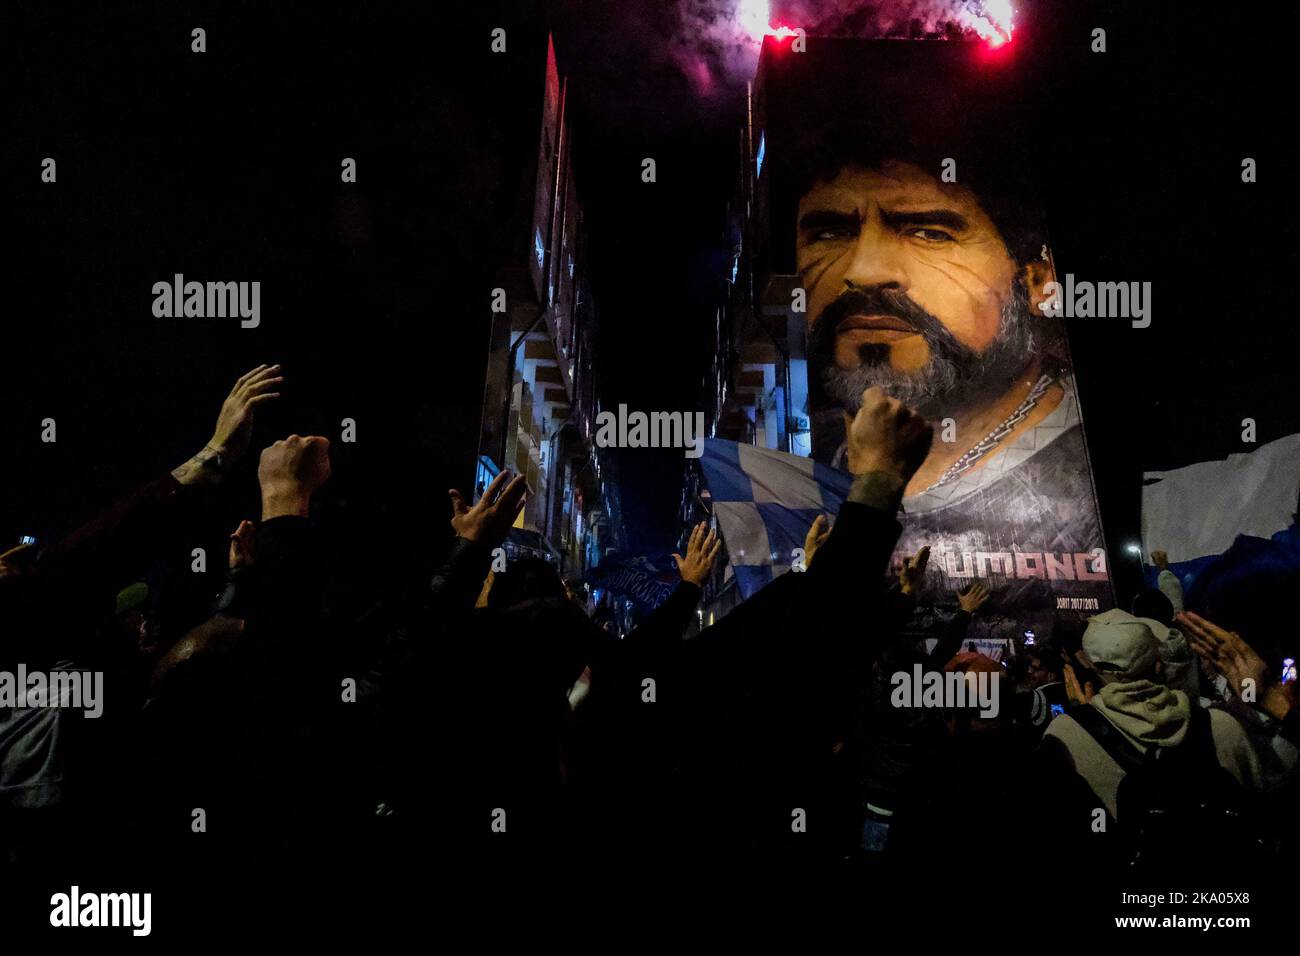 Oggi è il compleanno di Diego Armando Maradona per i napoletani. Omaggio dei fan a Diego Armando Maradona visitare il murale di San Giovanni a Teduccio fuochi d'artificio e canti oggi Maradona avrebbe avuto 62 anni Foto Stock